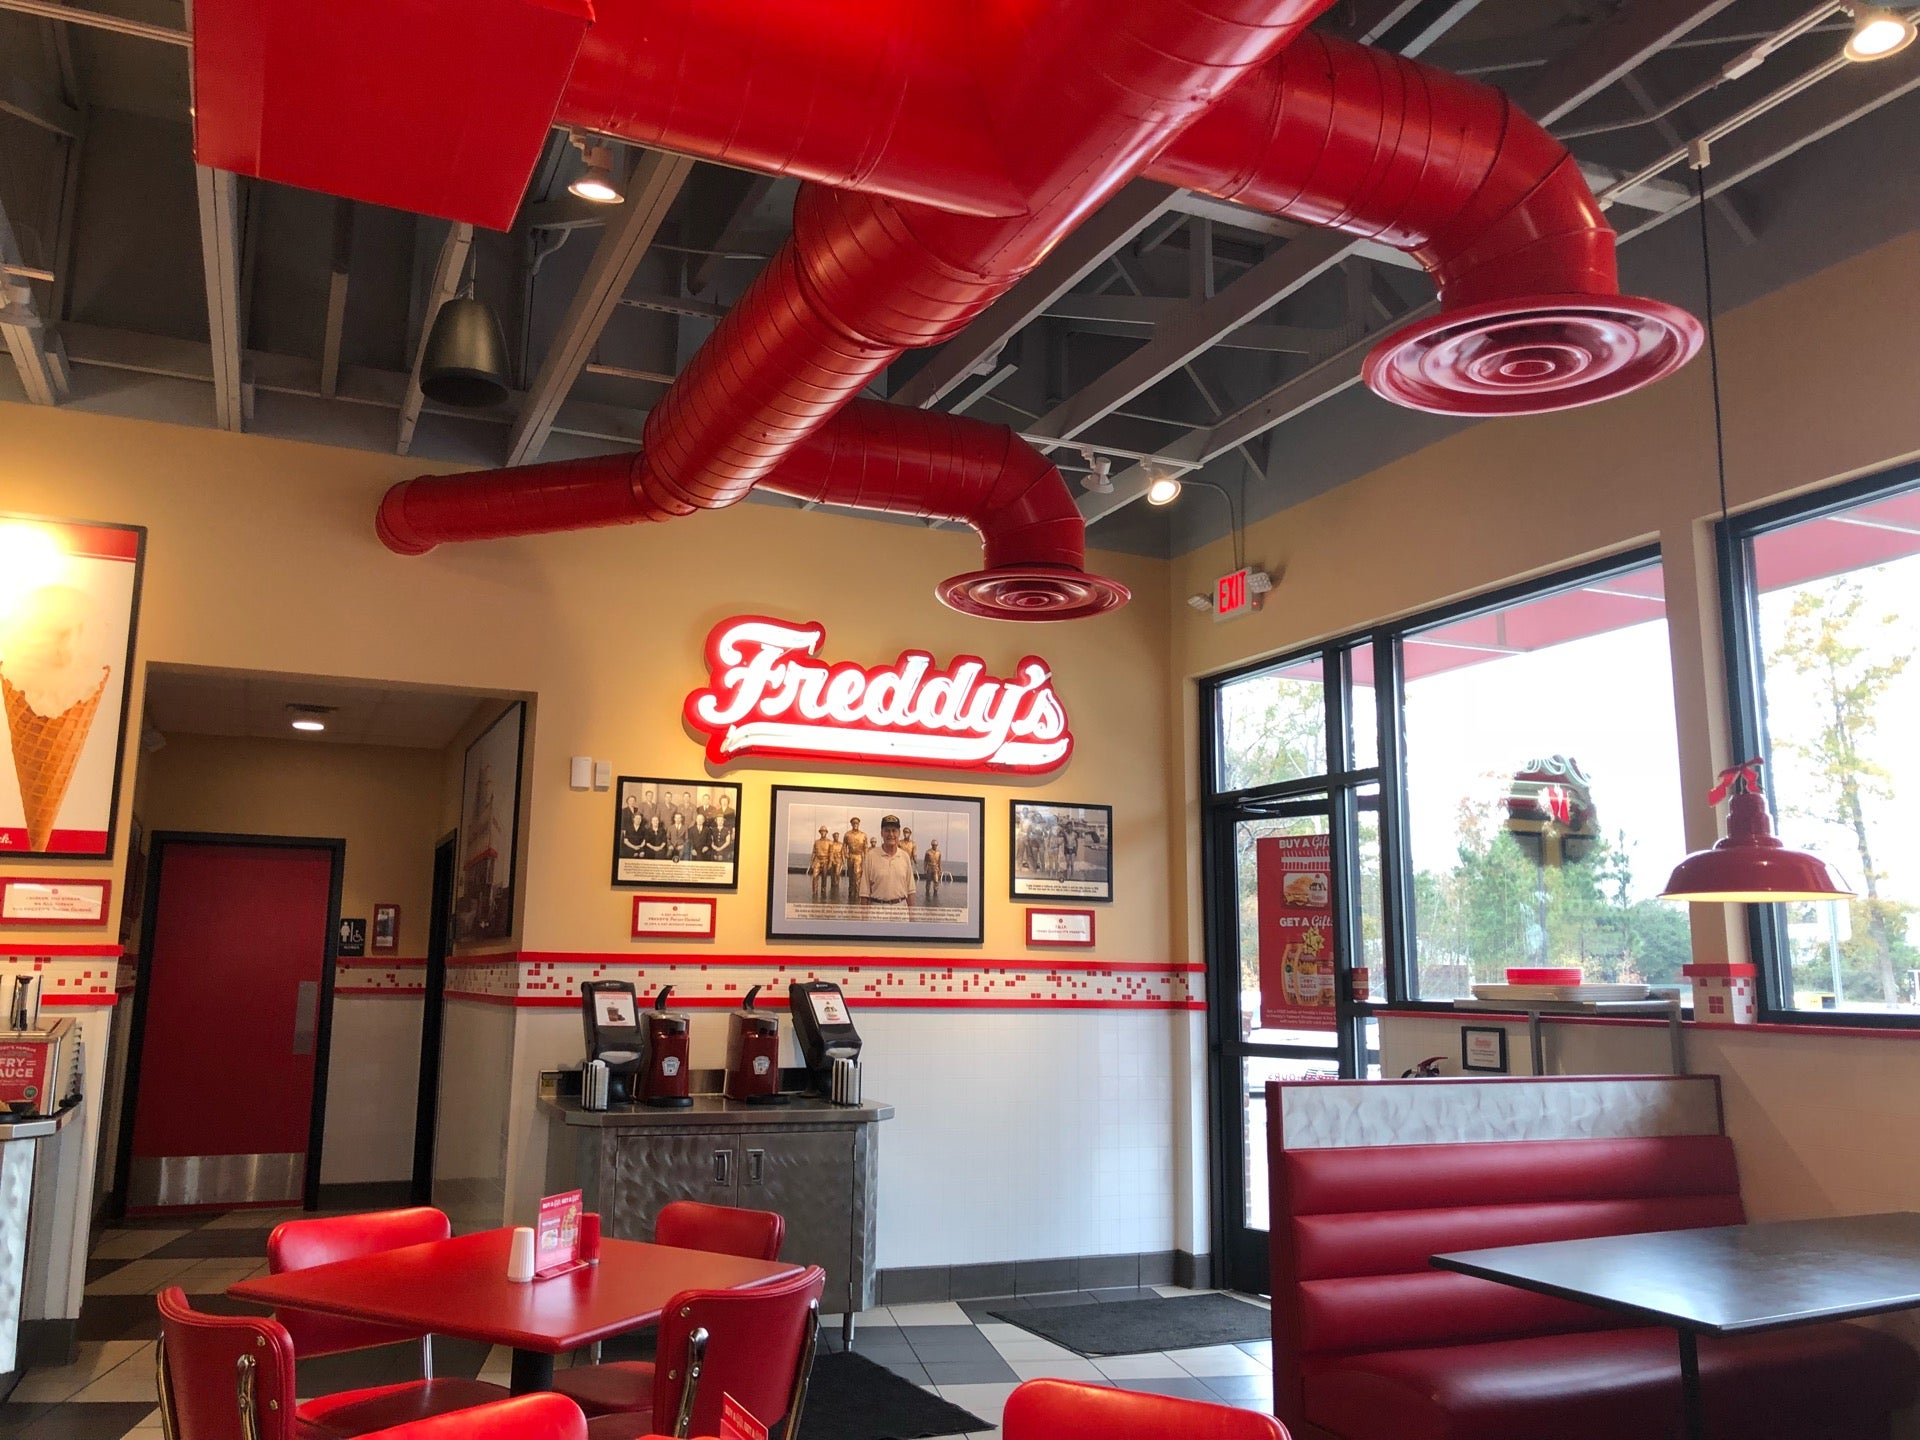 Freddy's Frozen Custard & Steakburgers opening in Lexington, SC